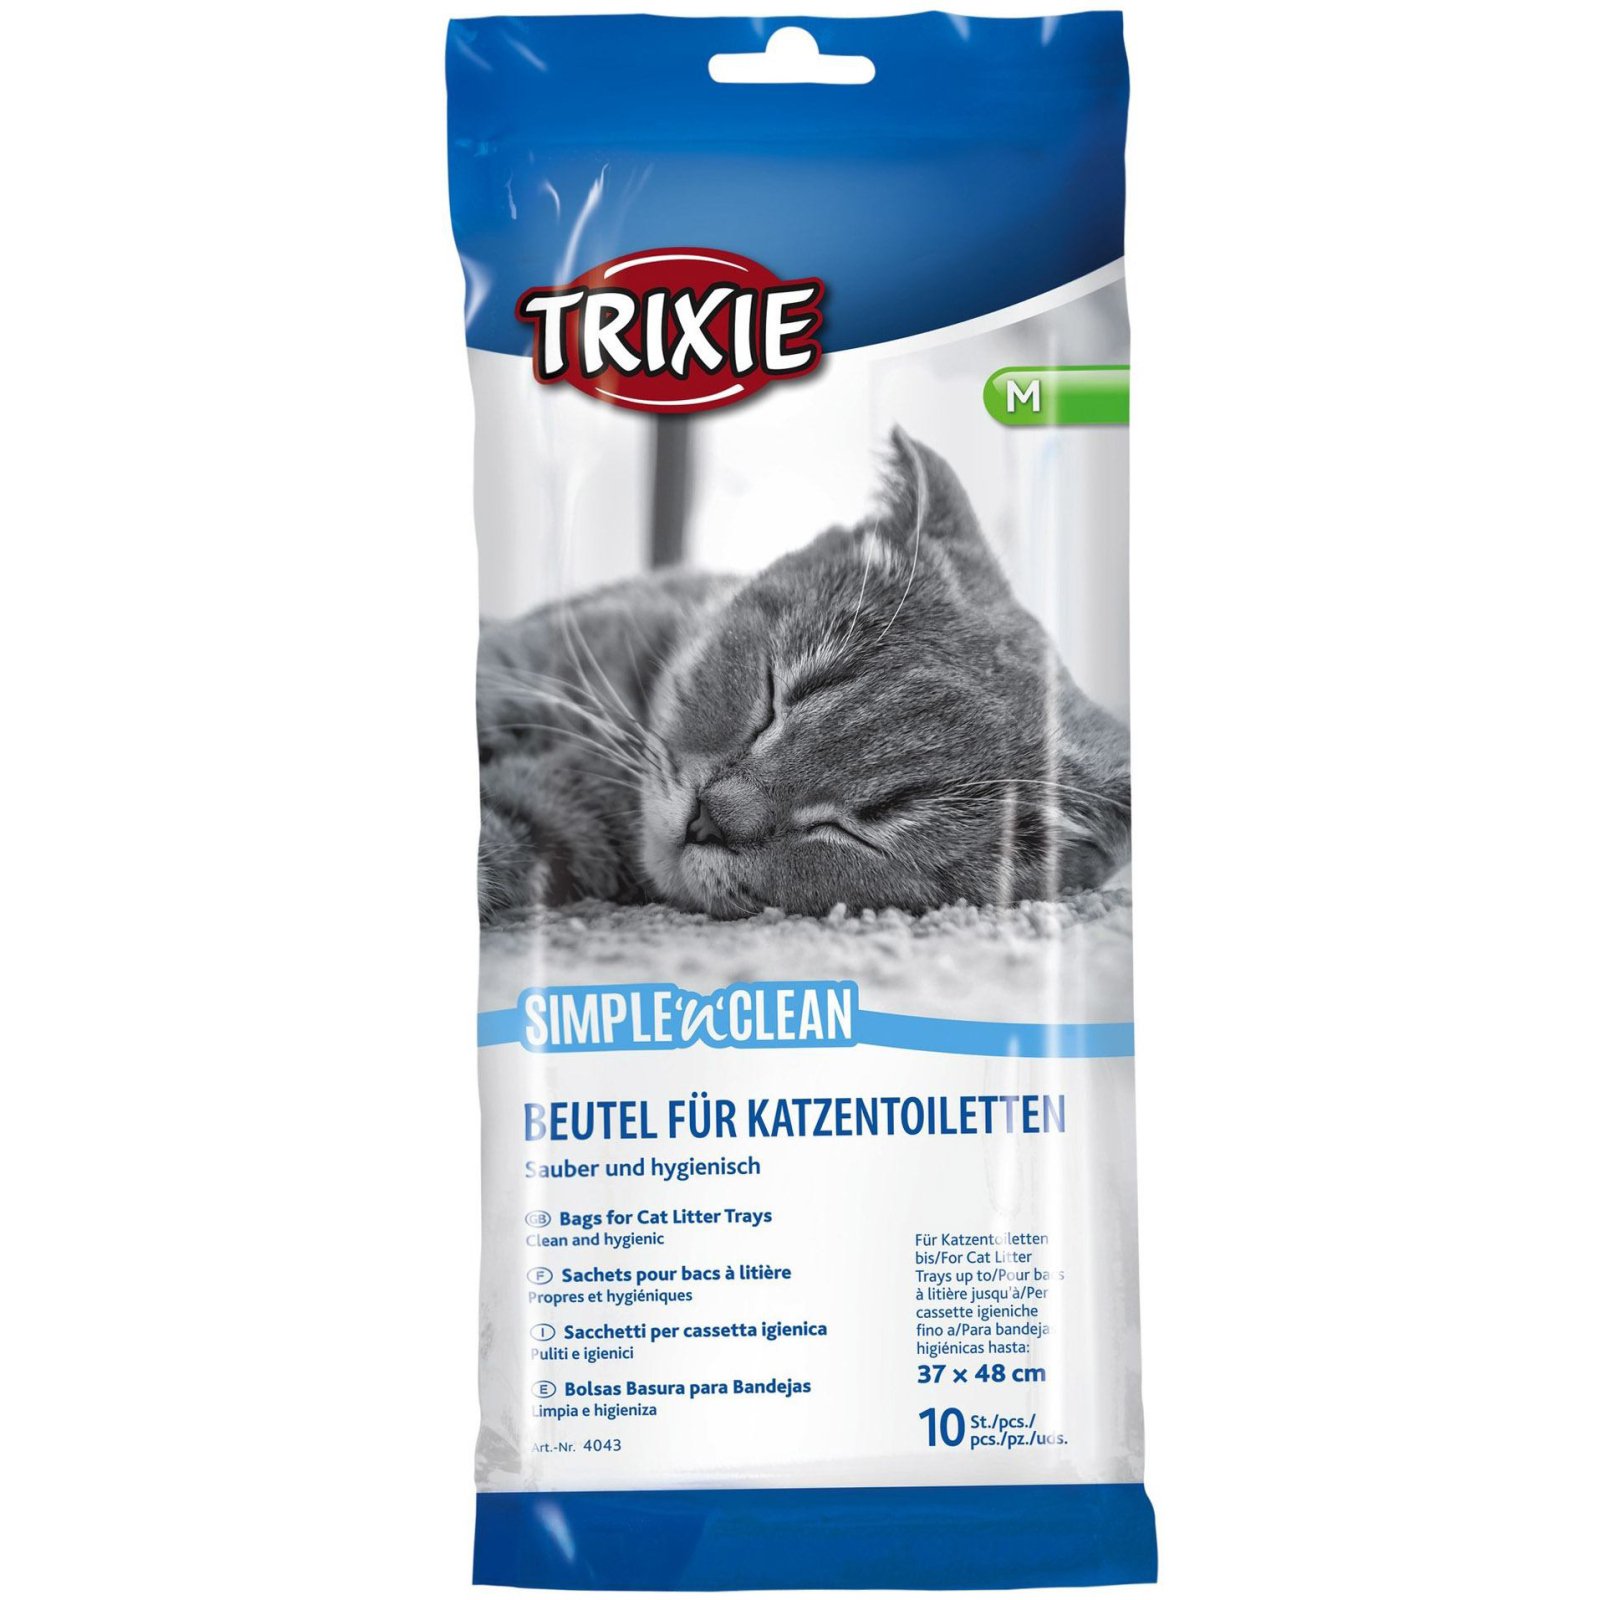 Пакеты для кошачьего туалета Trixie Simple'n'Clean 37x48 см 10 шт (4011905040431)